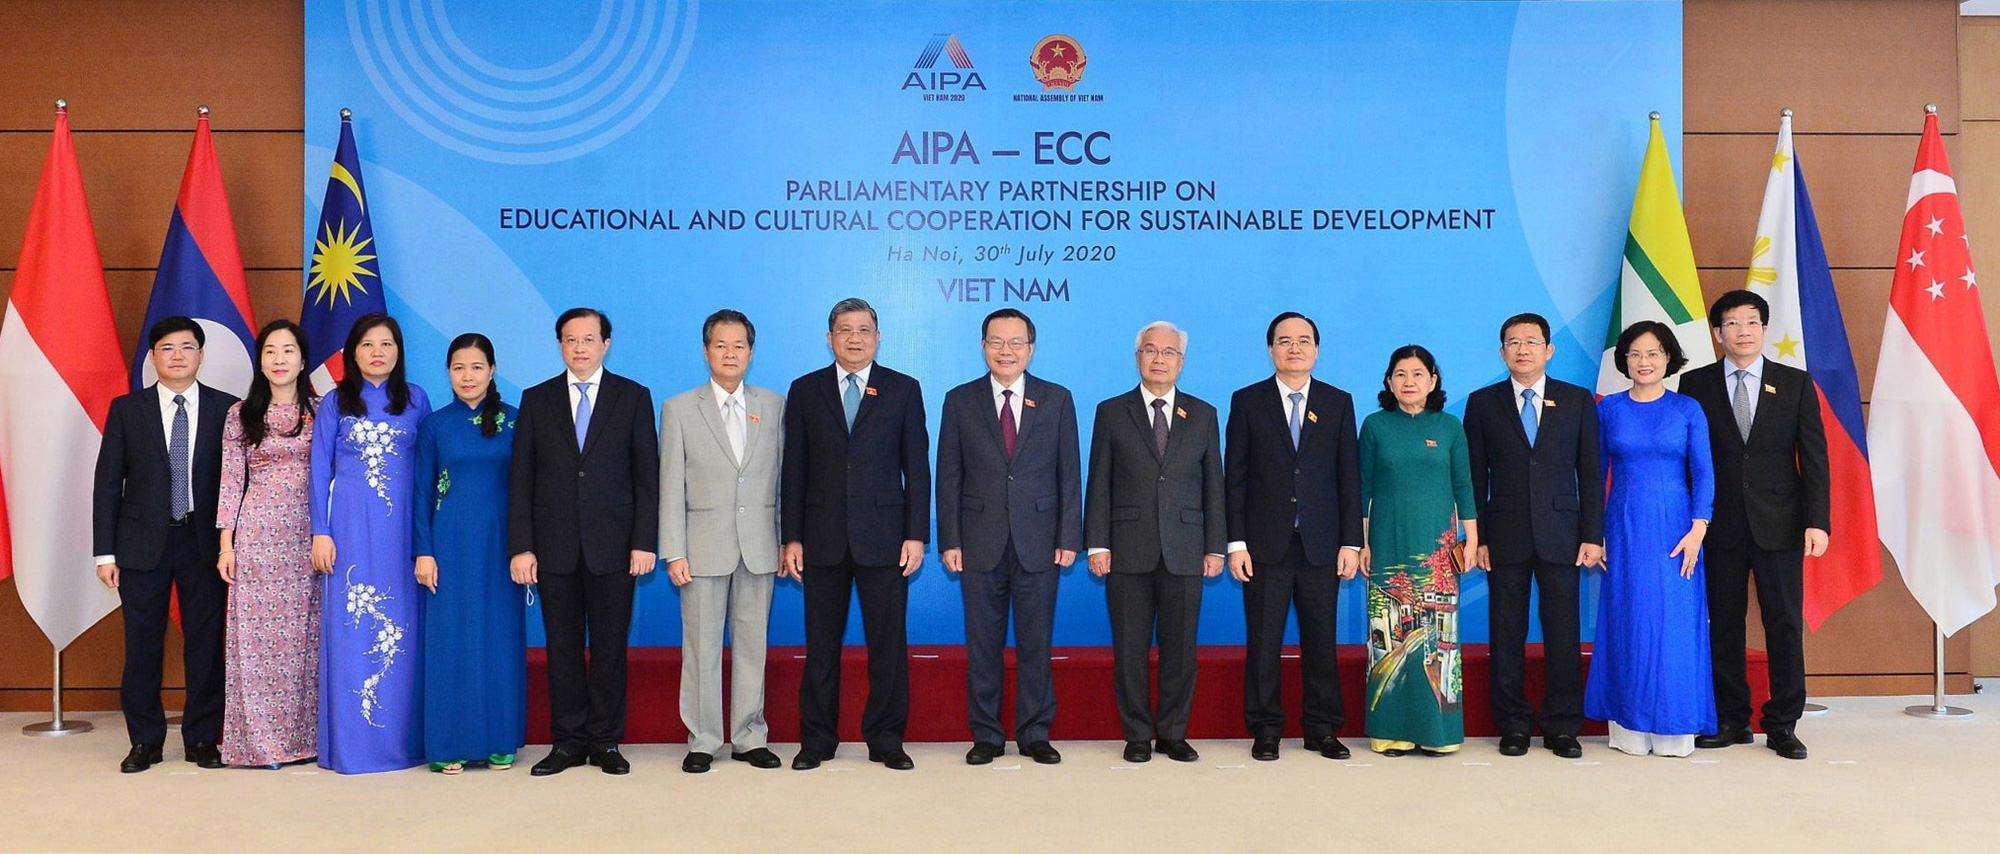 Thứ trưởng Tạ Quang Đông tham dự Hội nghị quốc tế “Đối tác nghị viện về hợp tác văn hóa, giáo dục vì sự phát triển bền vững” - Ảnh 5.